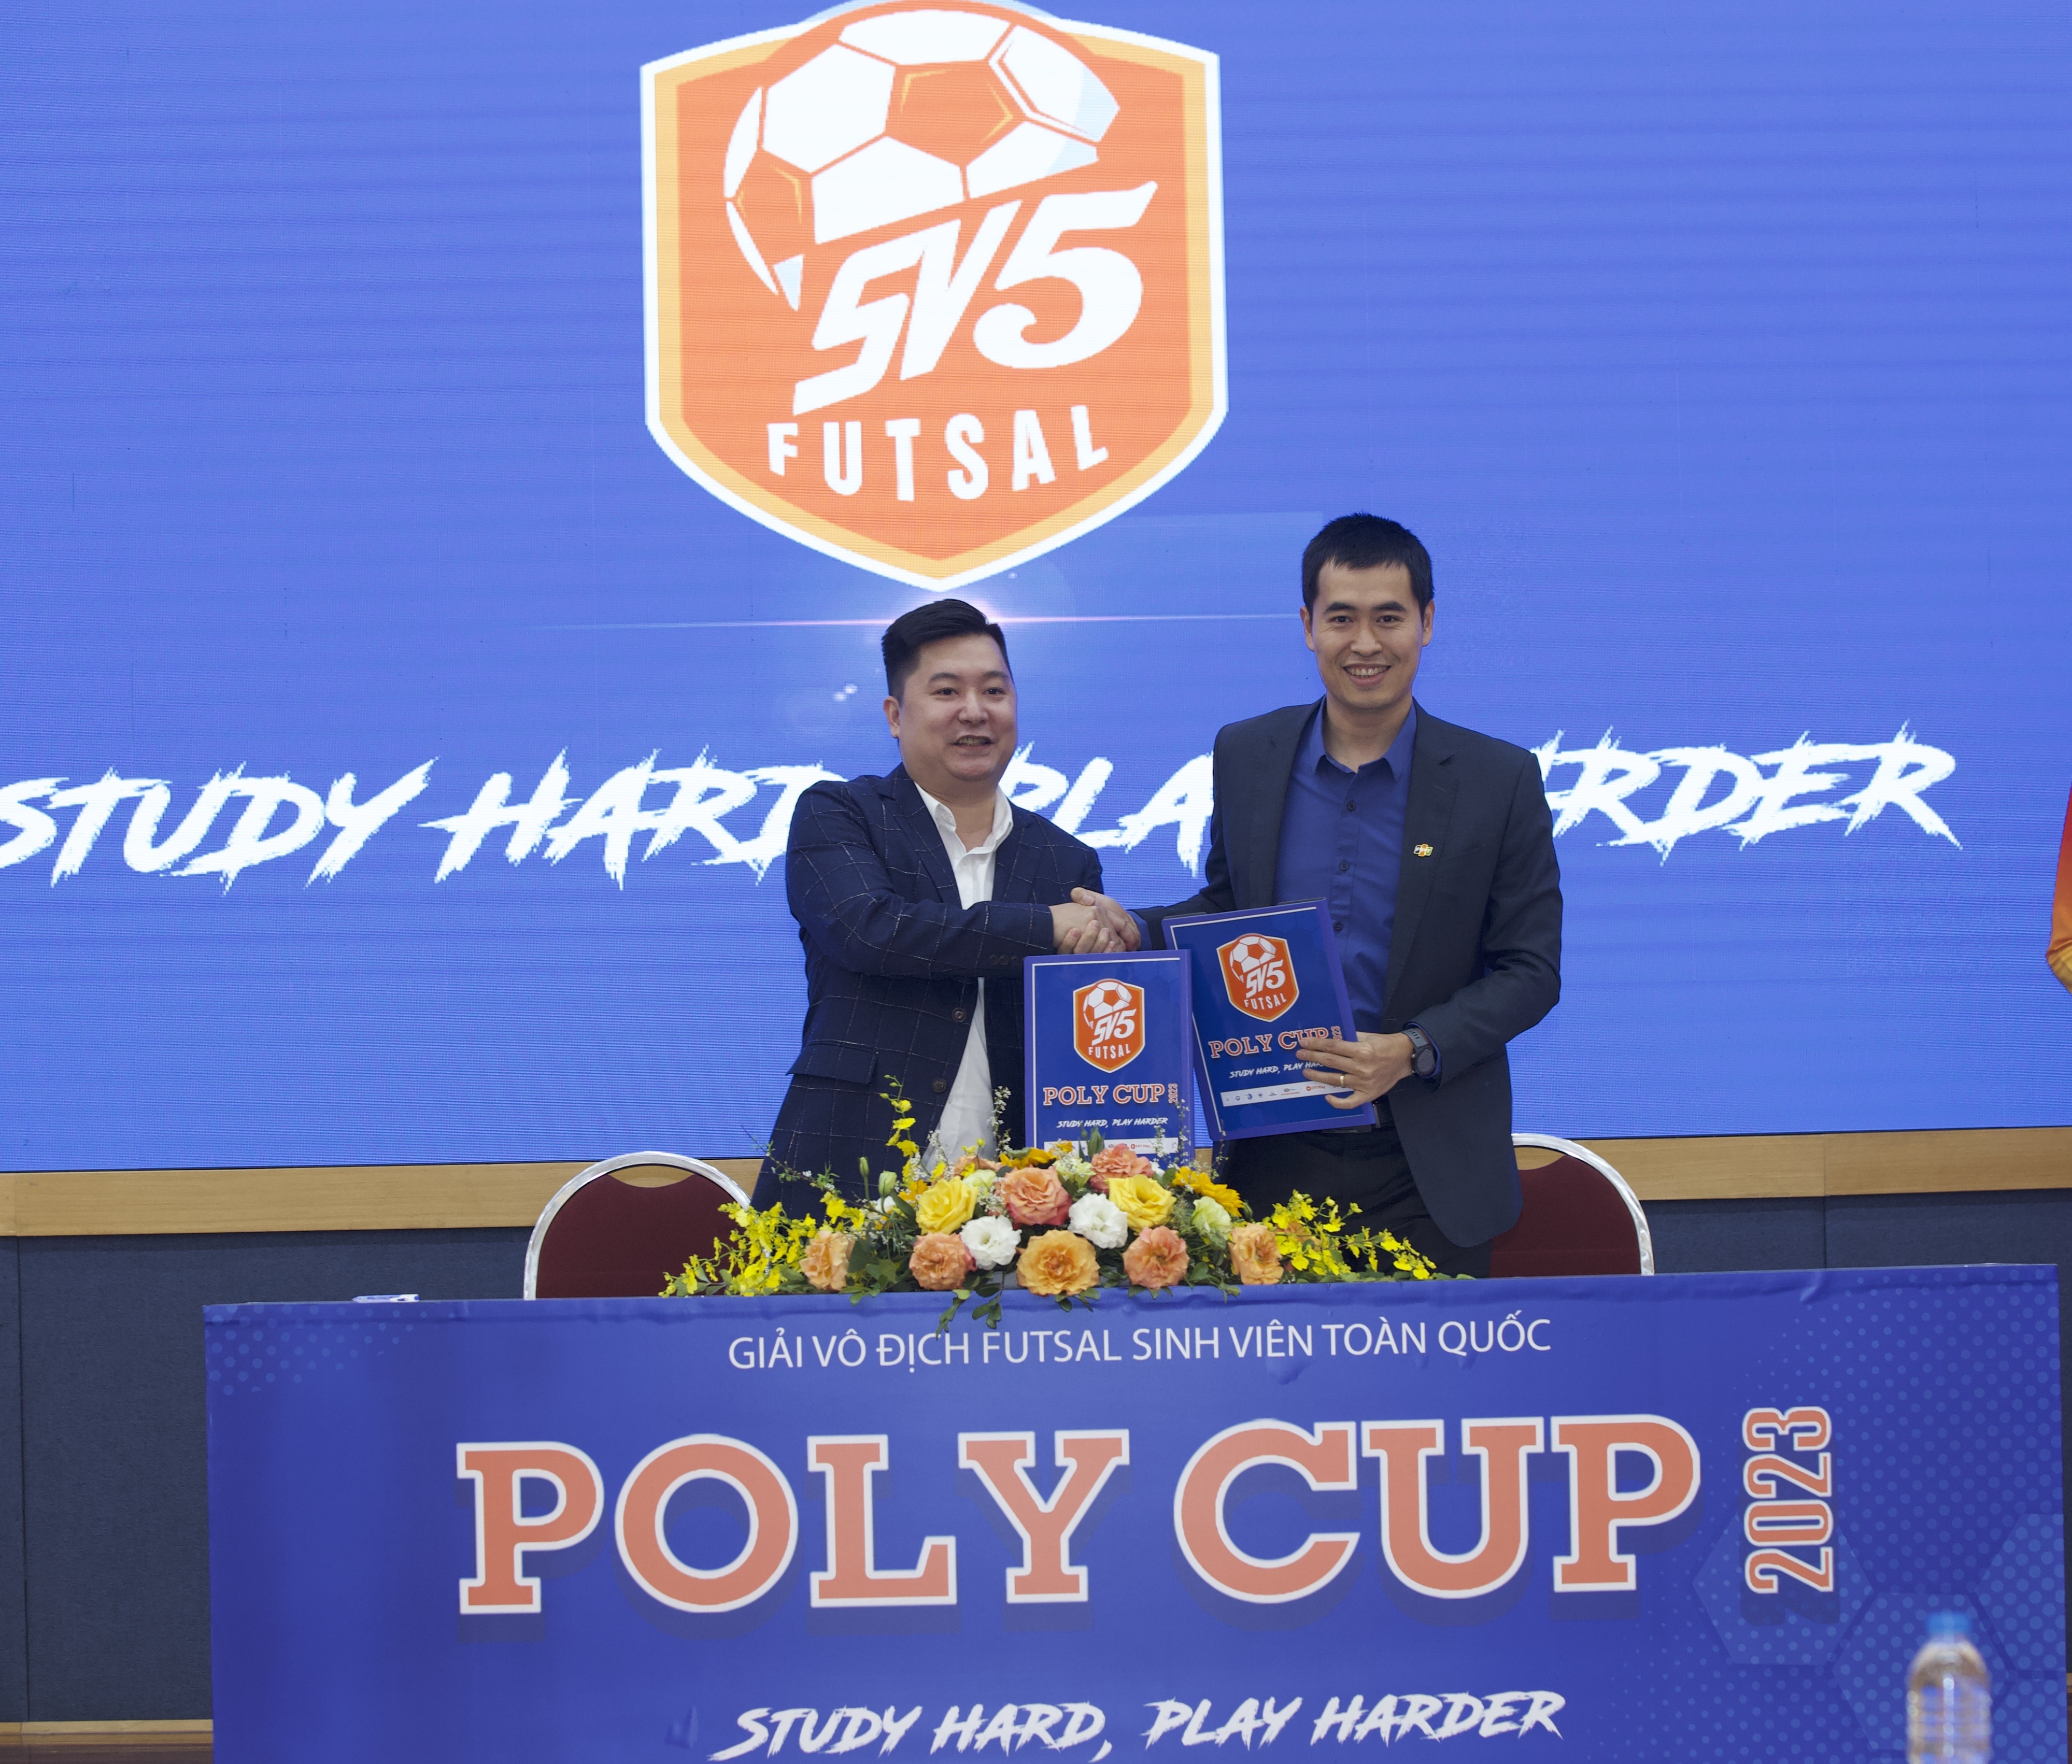 Poly Cup 2023 - Giải Fustal hấp dẫn dành cho sinh viên cả nước